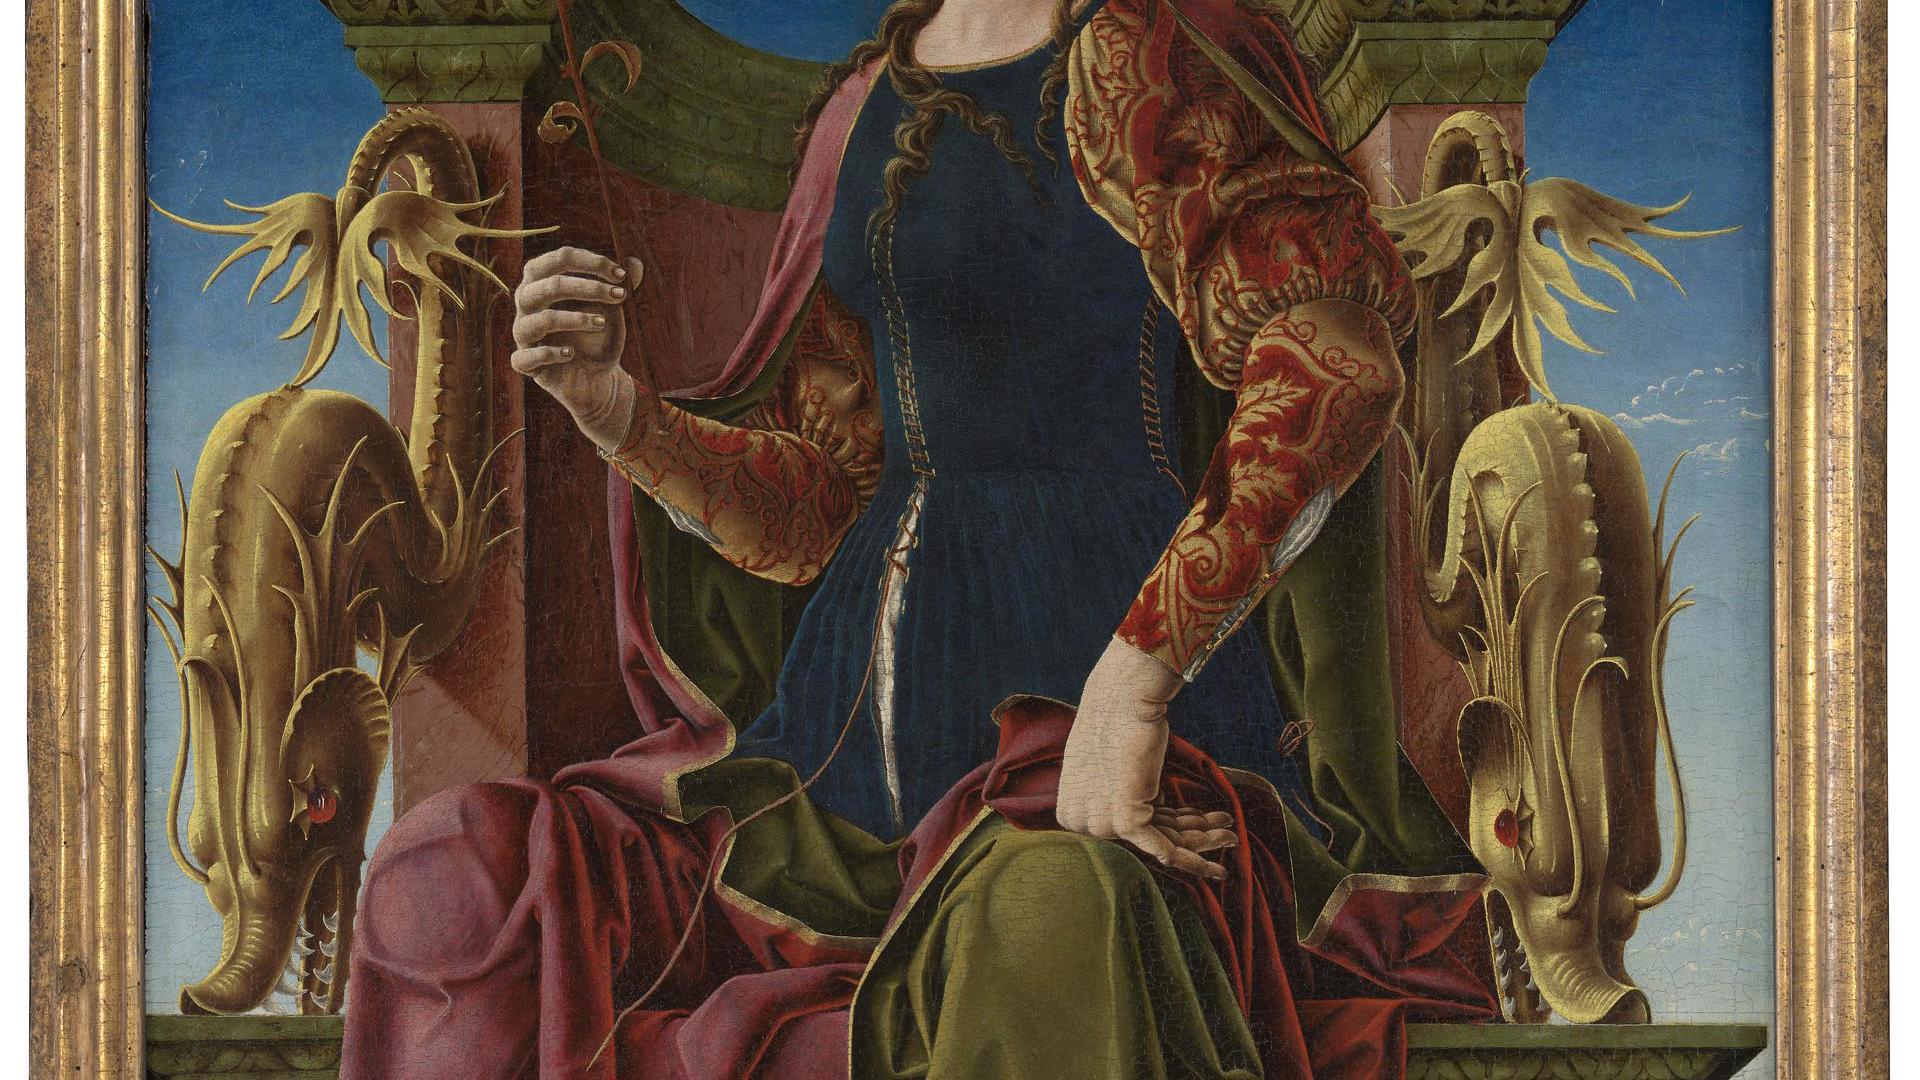 A Muse (Calliope?) by Cosimo Tura